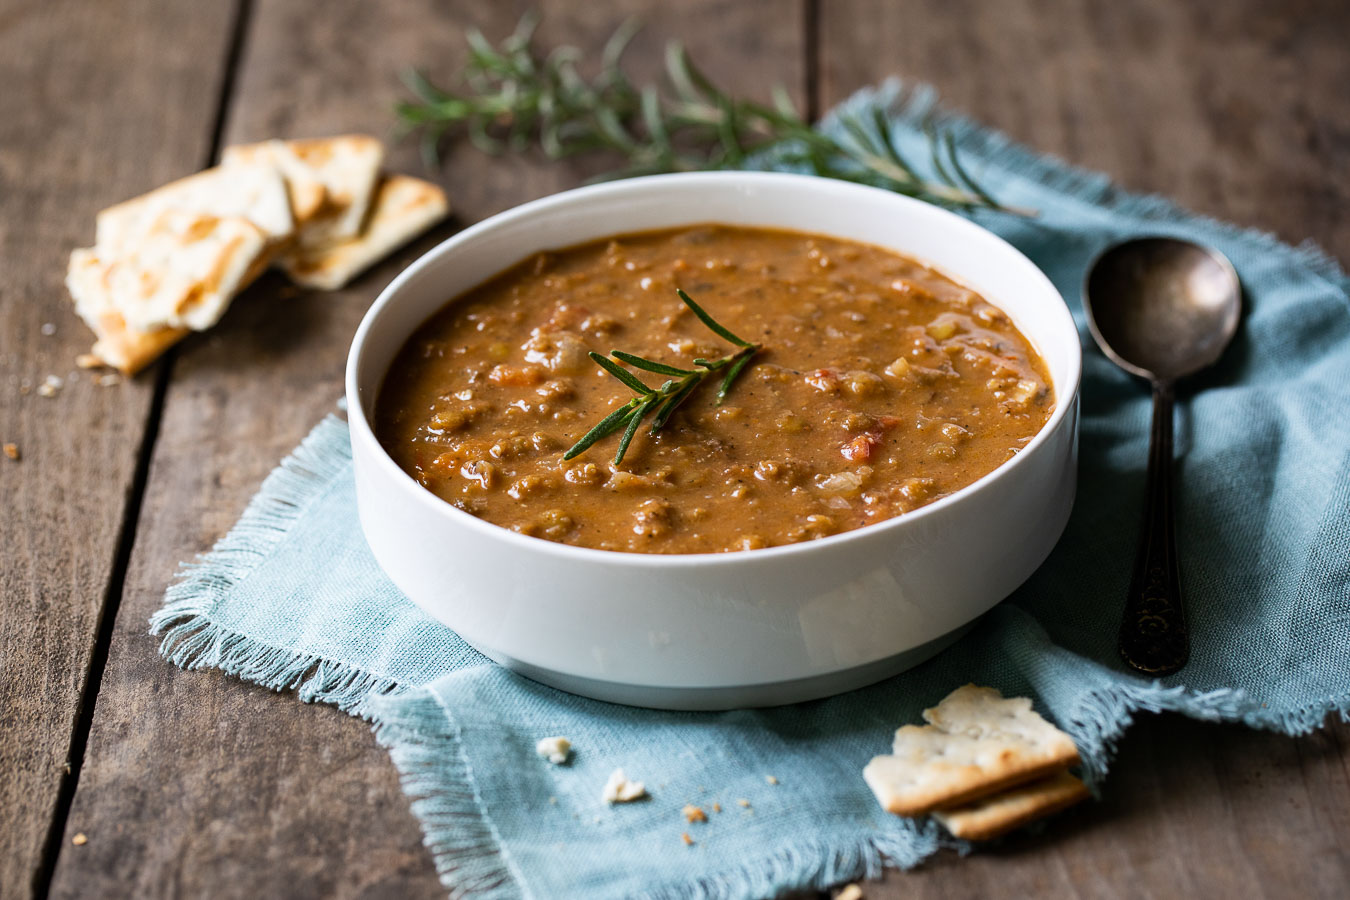 Healthy Vegan Lentil Soup - One Pot Lentil Soup